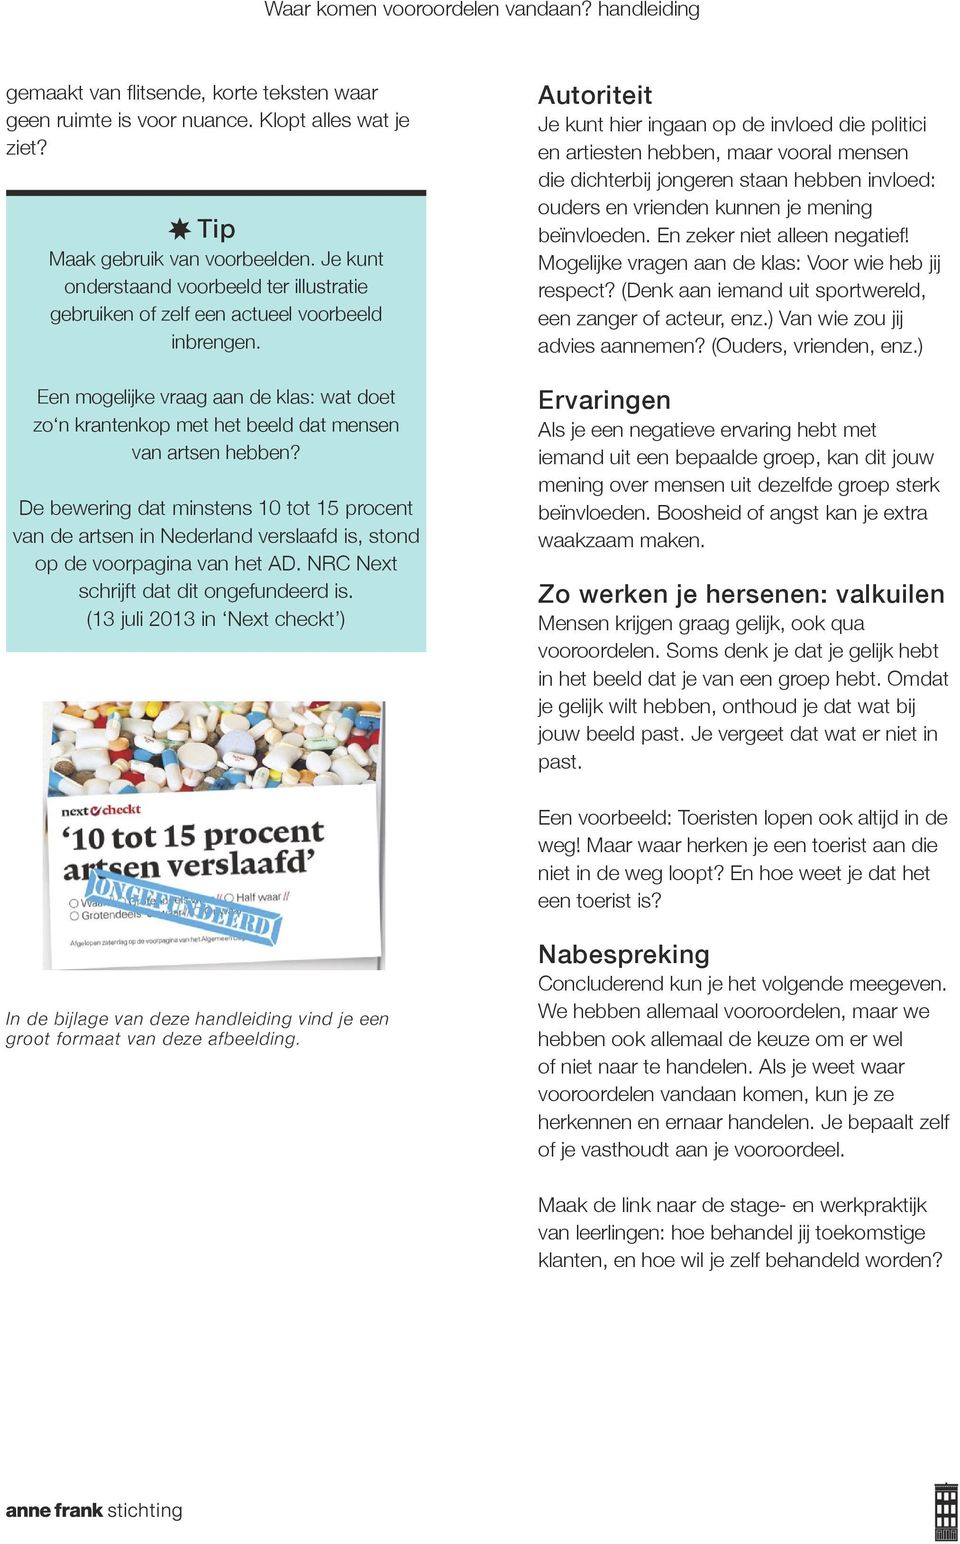 De bewering dat minstens 10 tot 15 procent van de artsen in Nederland verslaafd is, stond op de voorpagina van het AD. NRC Next schrijft dat dit ongefundeerd is.